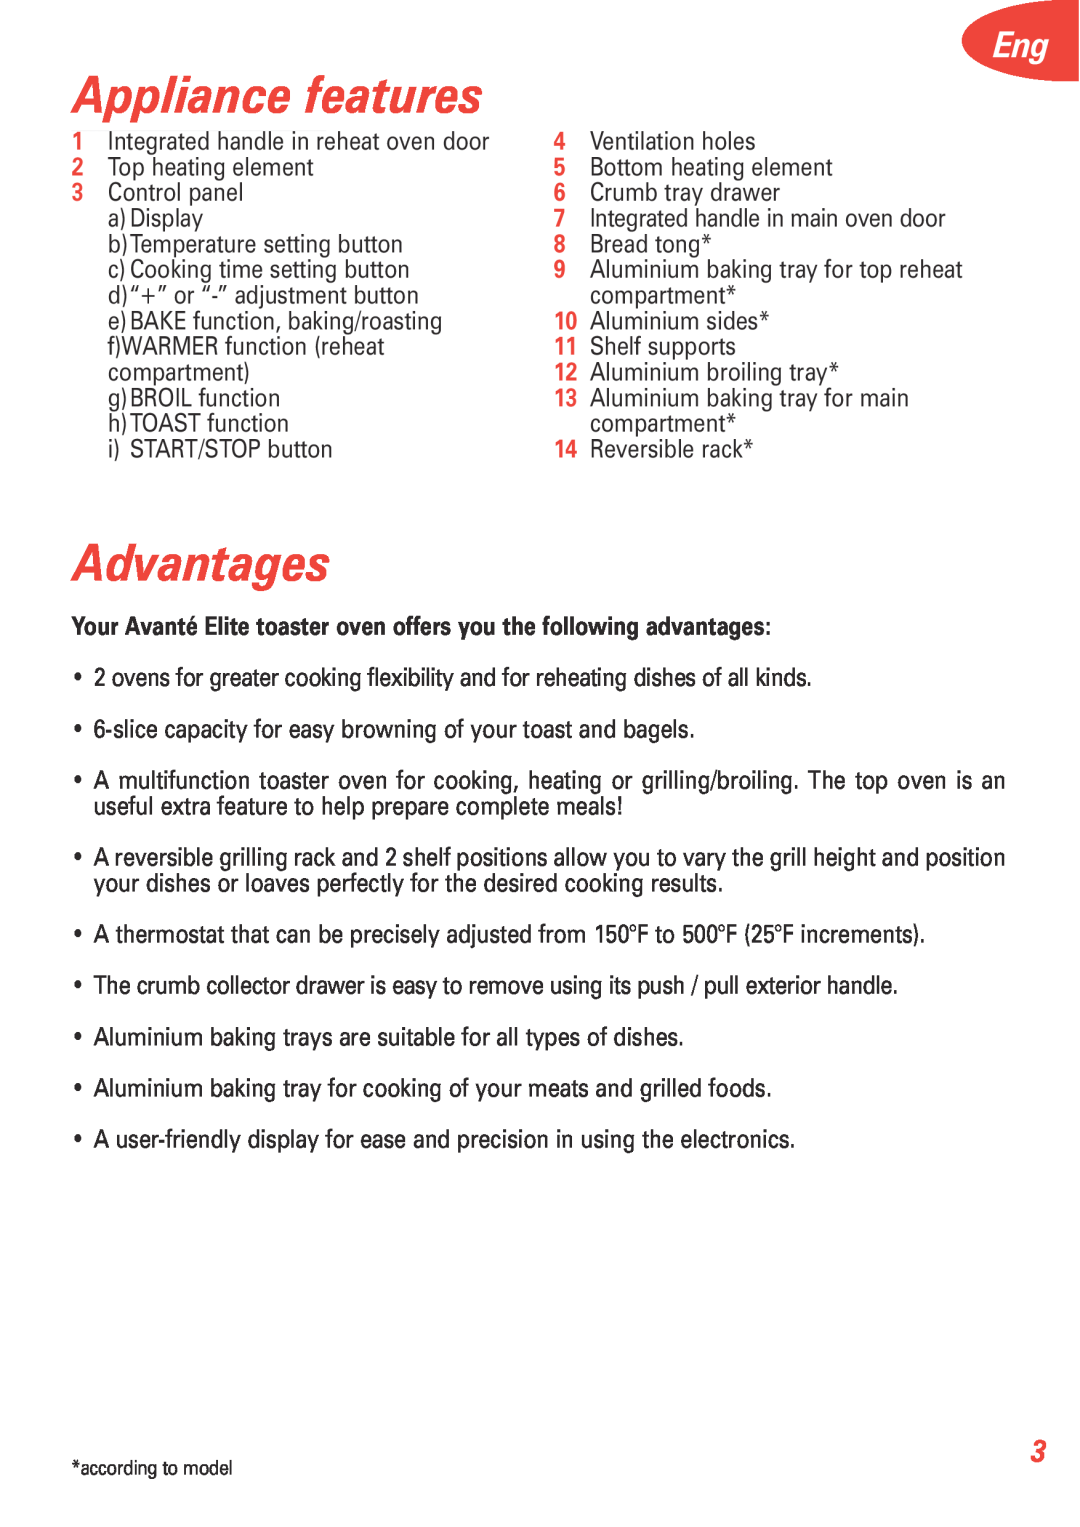 T-Fal 5252 manual Appliance features, Advantages 